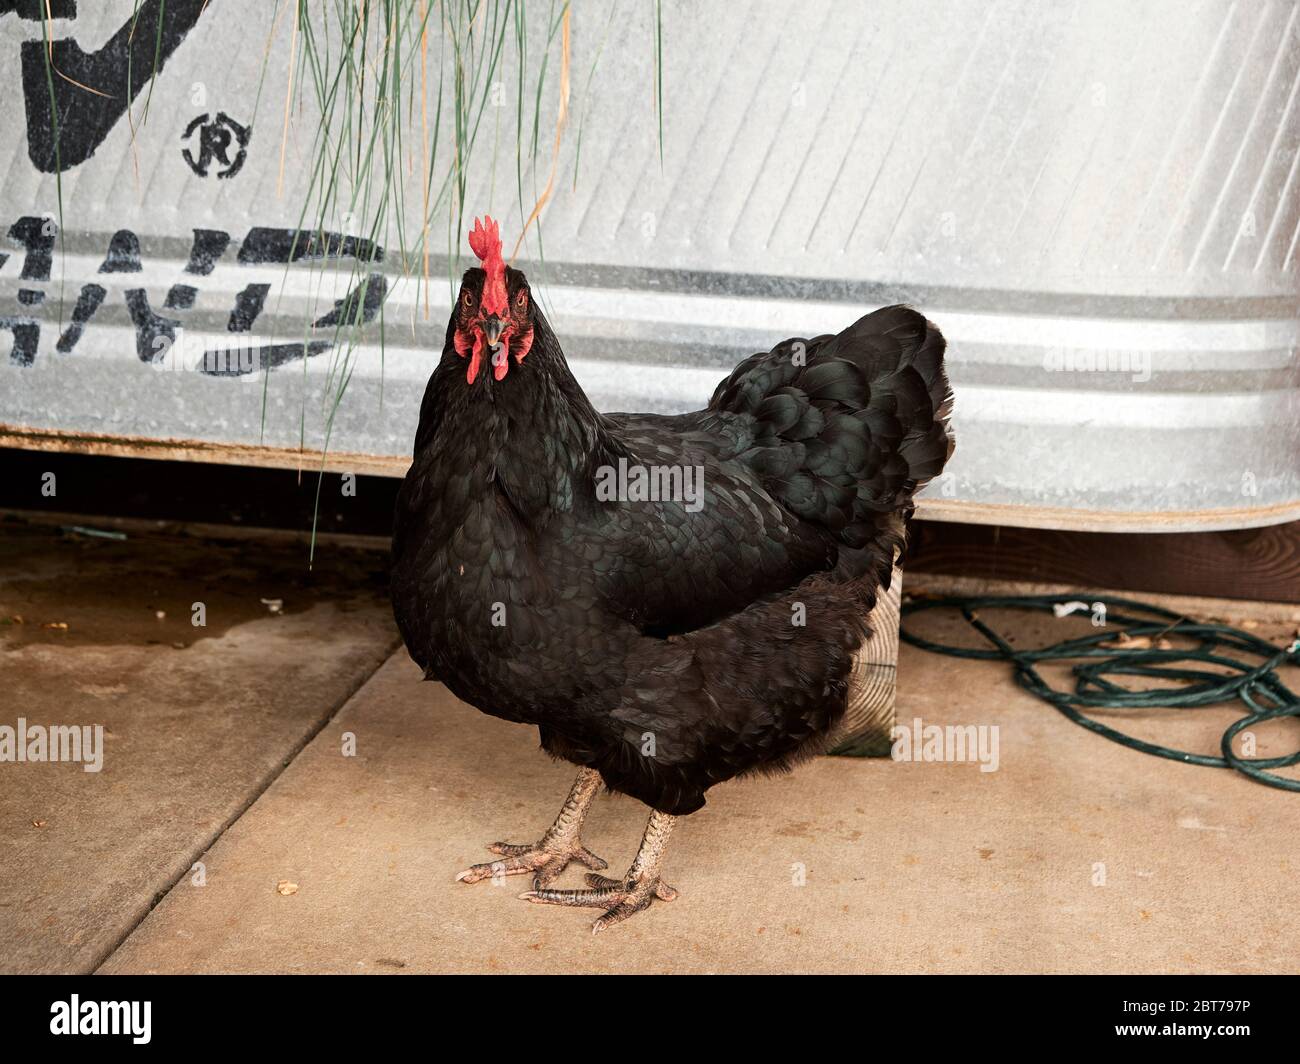 Schwarzer Australorp Hahn oder männliches Huhn mit einem roten Kamm. Stockfoto